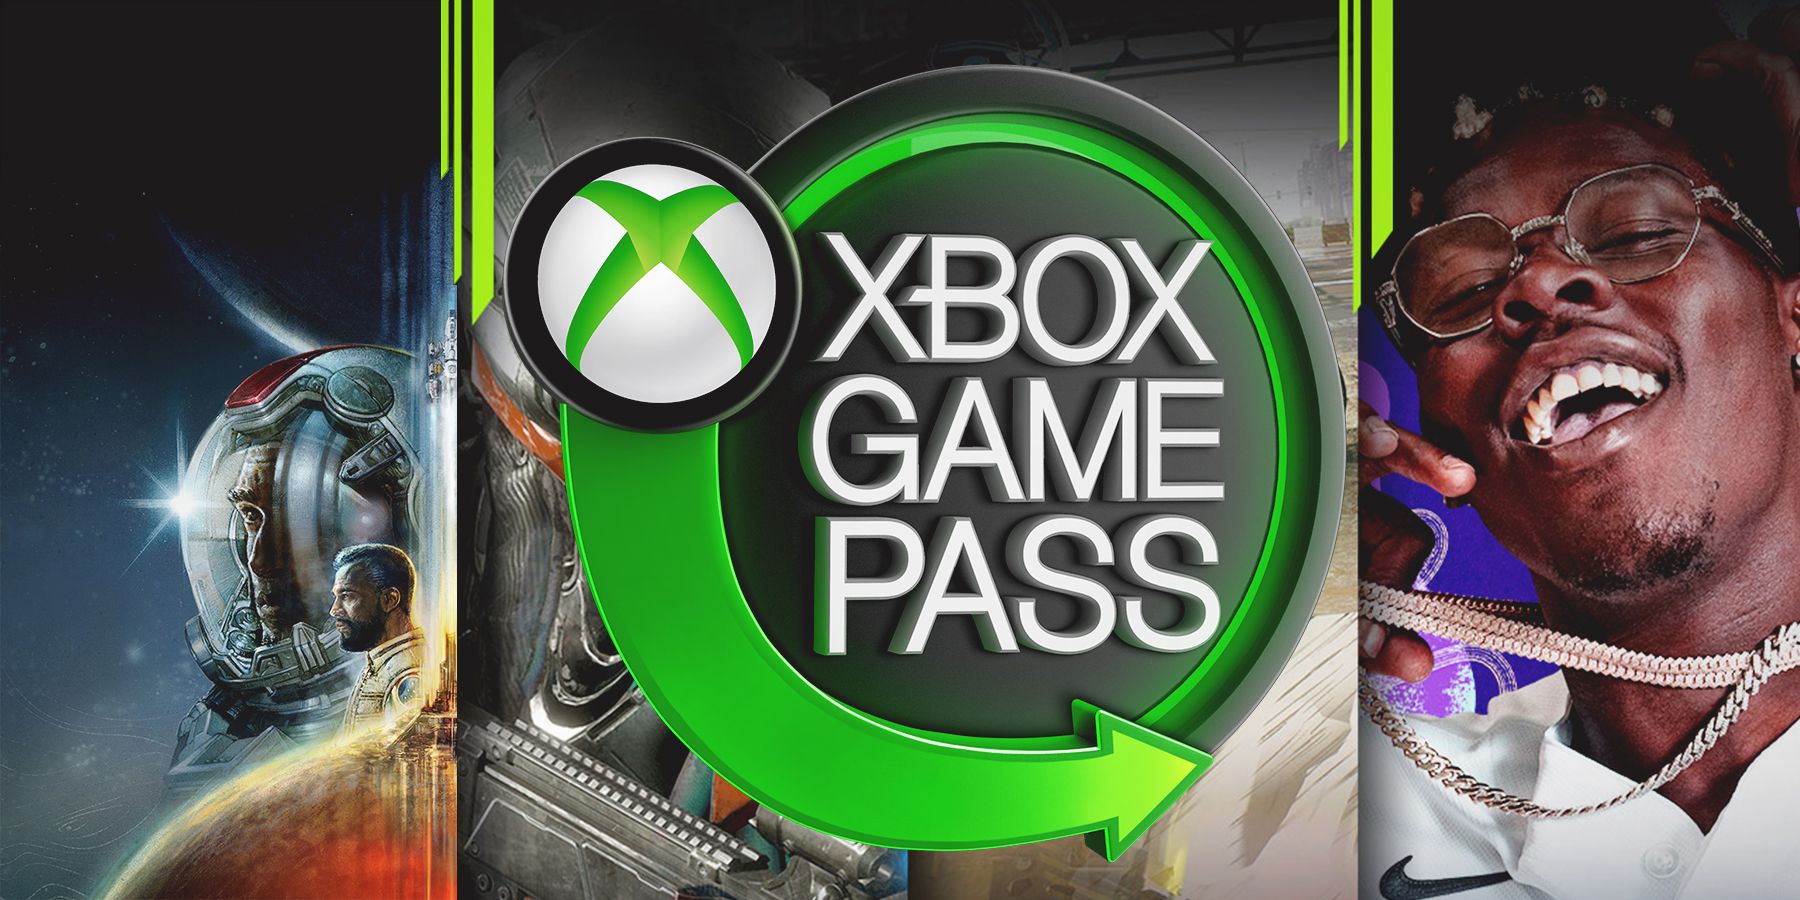 Xbox Game Pass just got a lot better